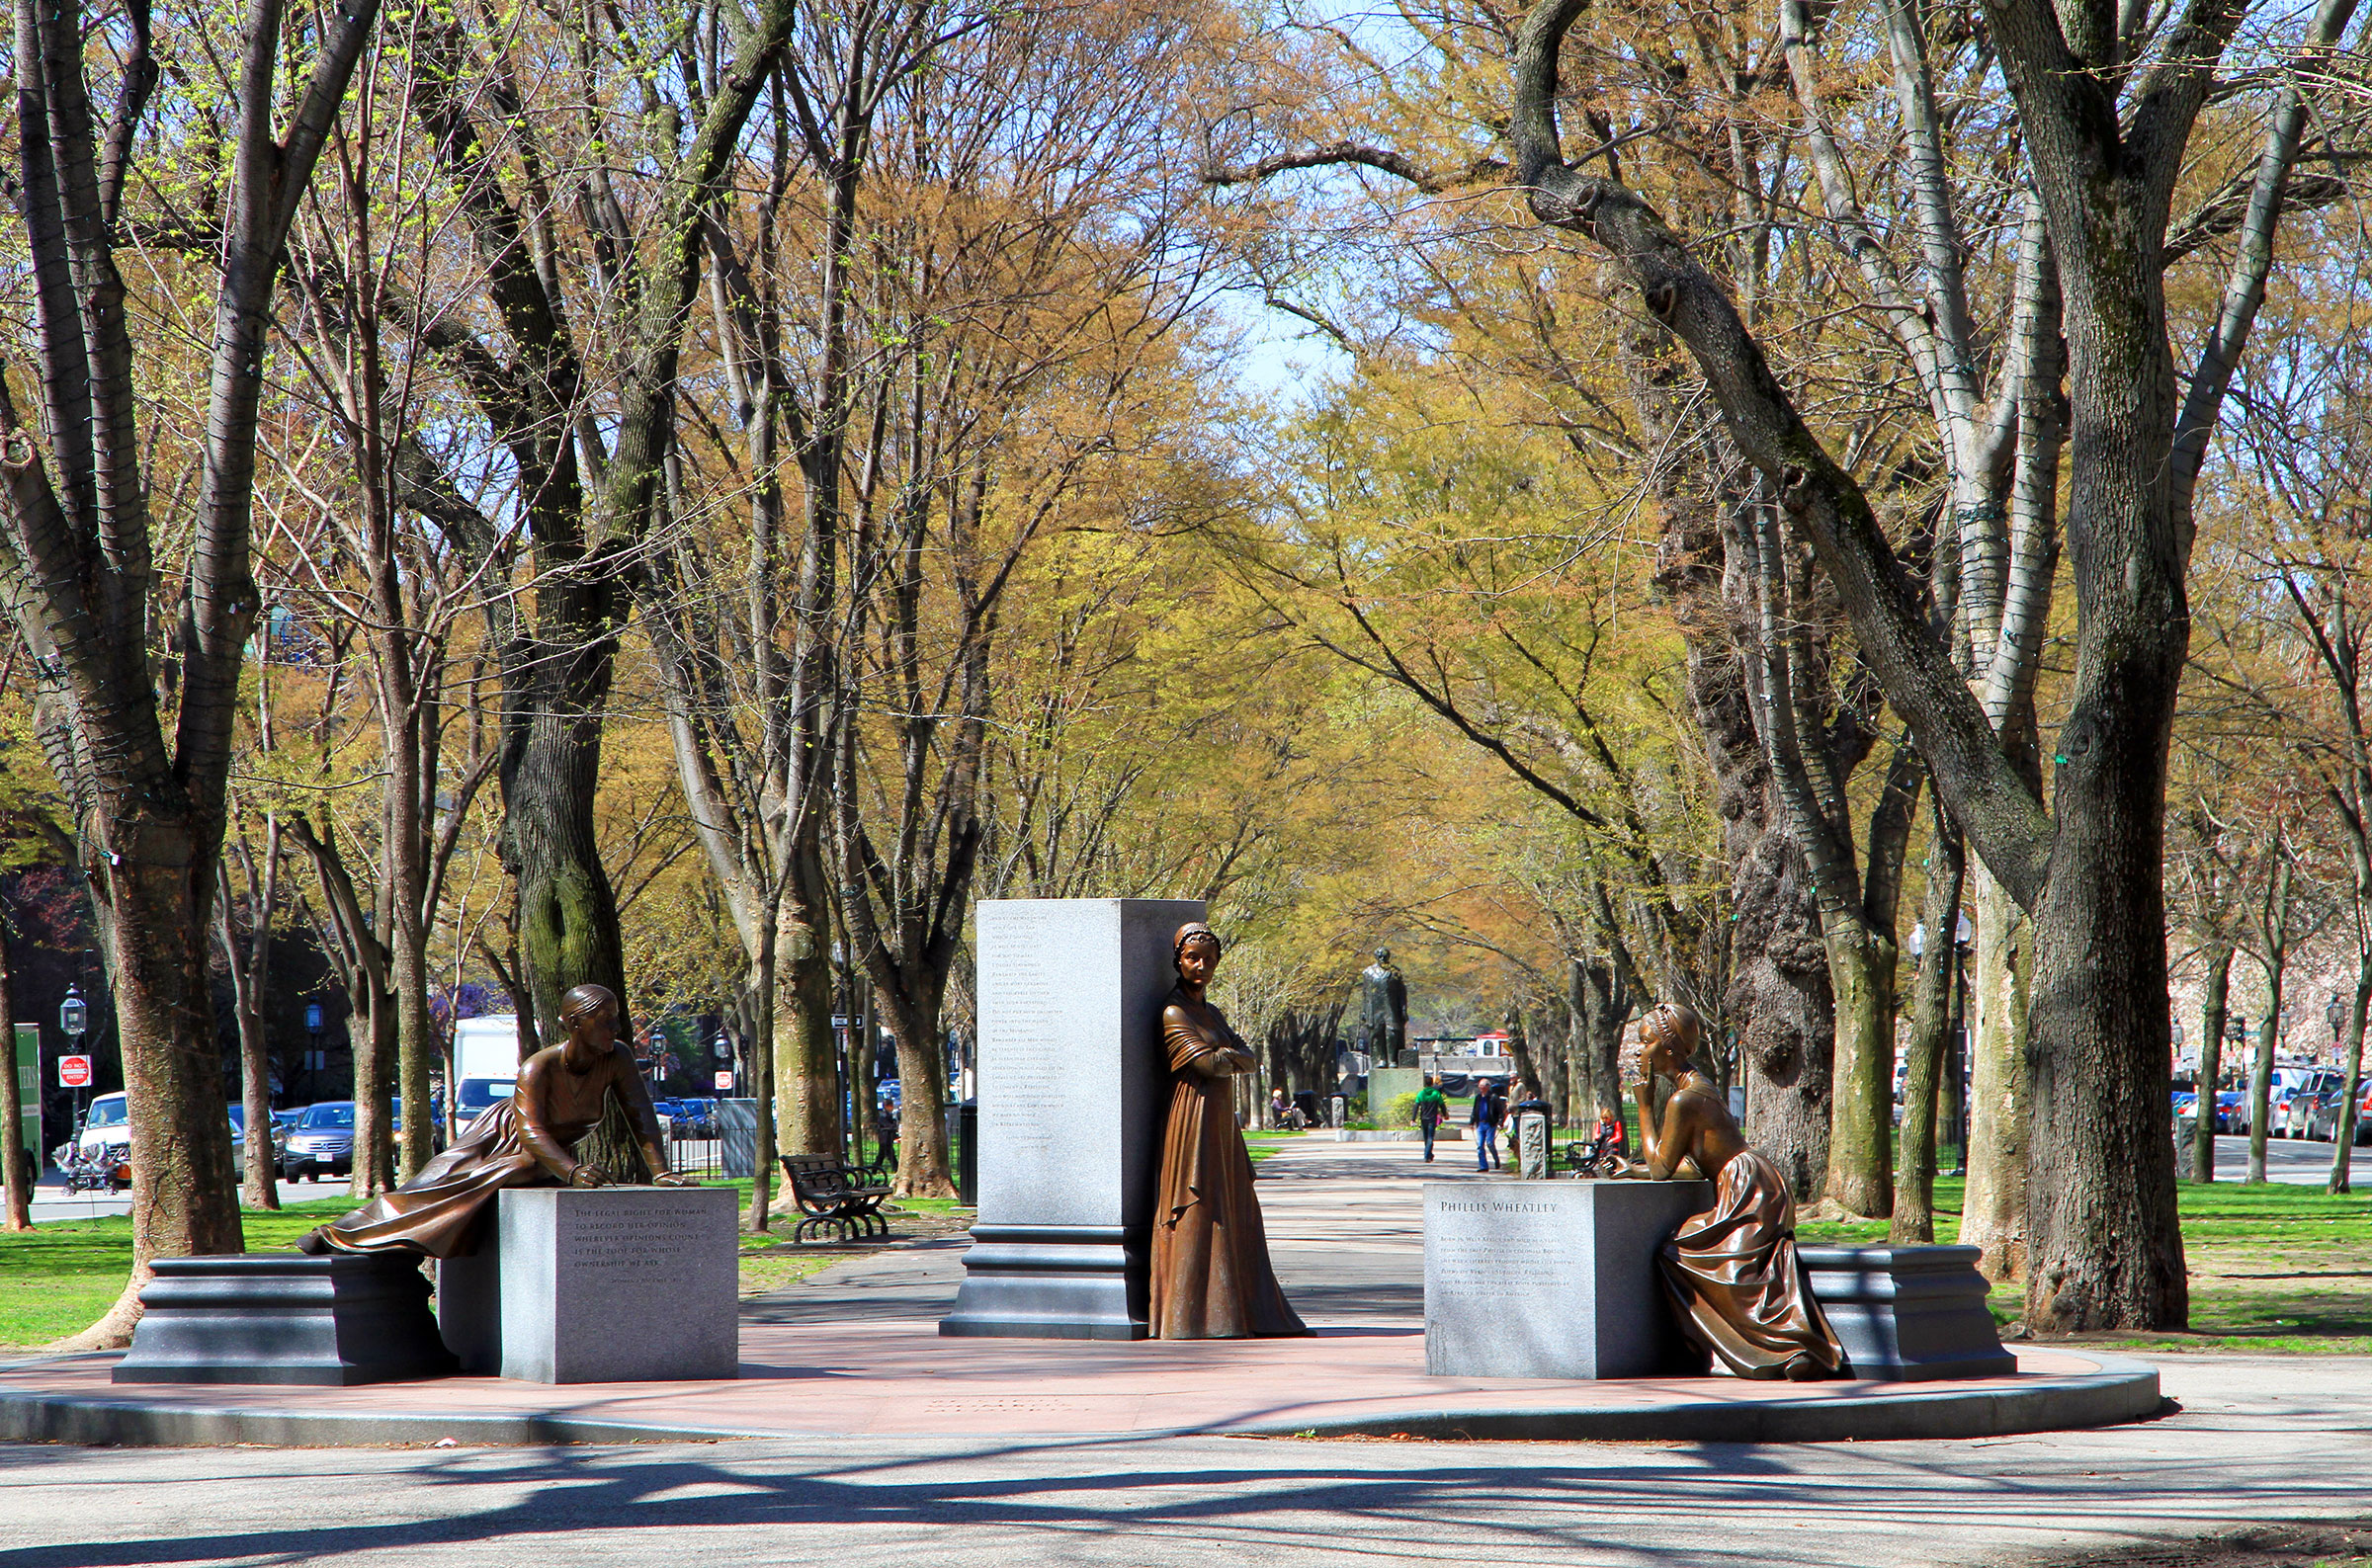 The Boston Women's Memorial in Boston, Mass. (Wikimedia Commons/Ingfbruno)